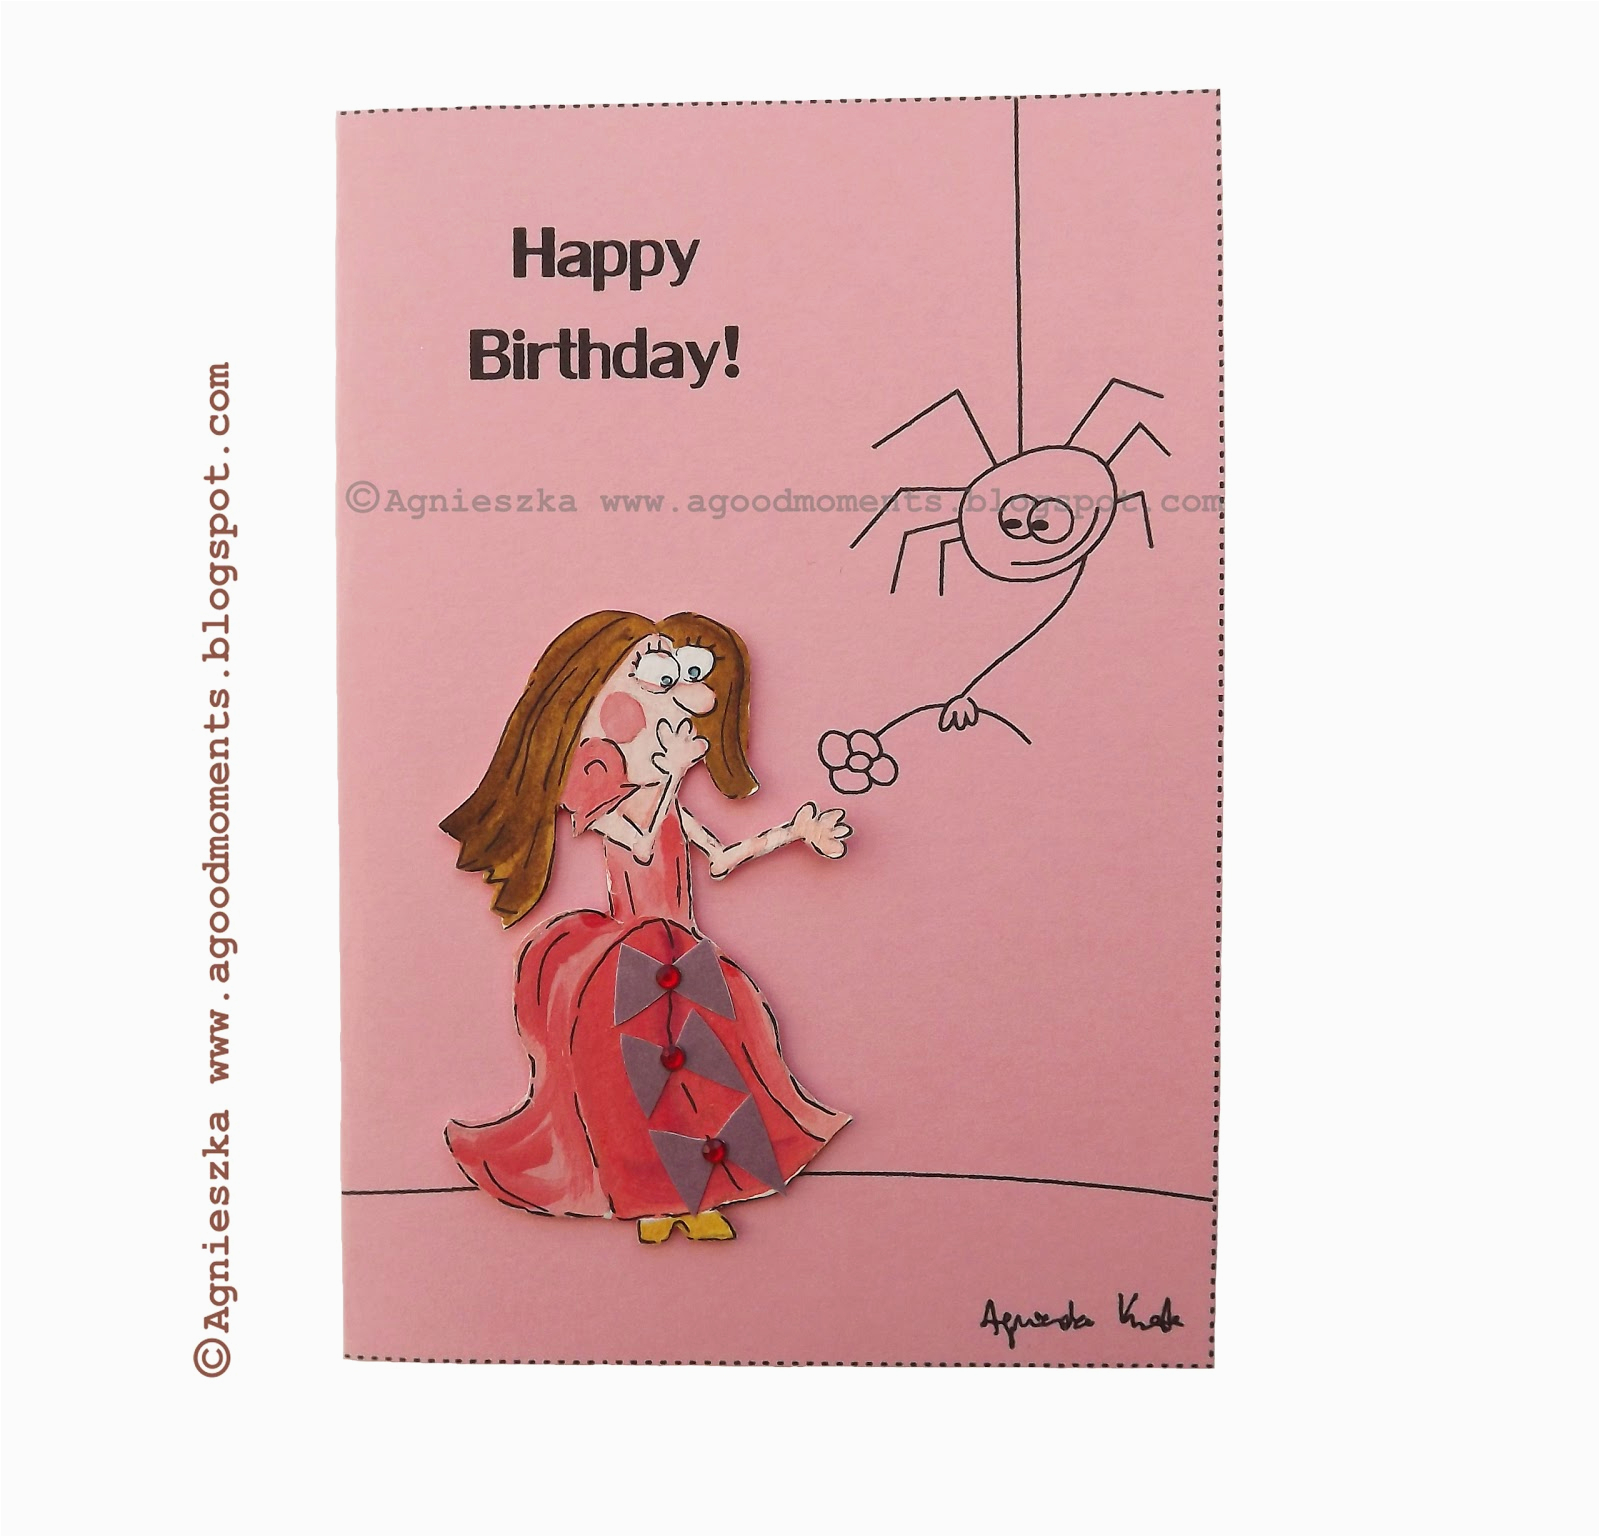 Where to Buy Funny Birthday Cards Good Moments Funny Birthday Card Smieszna Kartka Urodzinowa